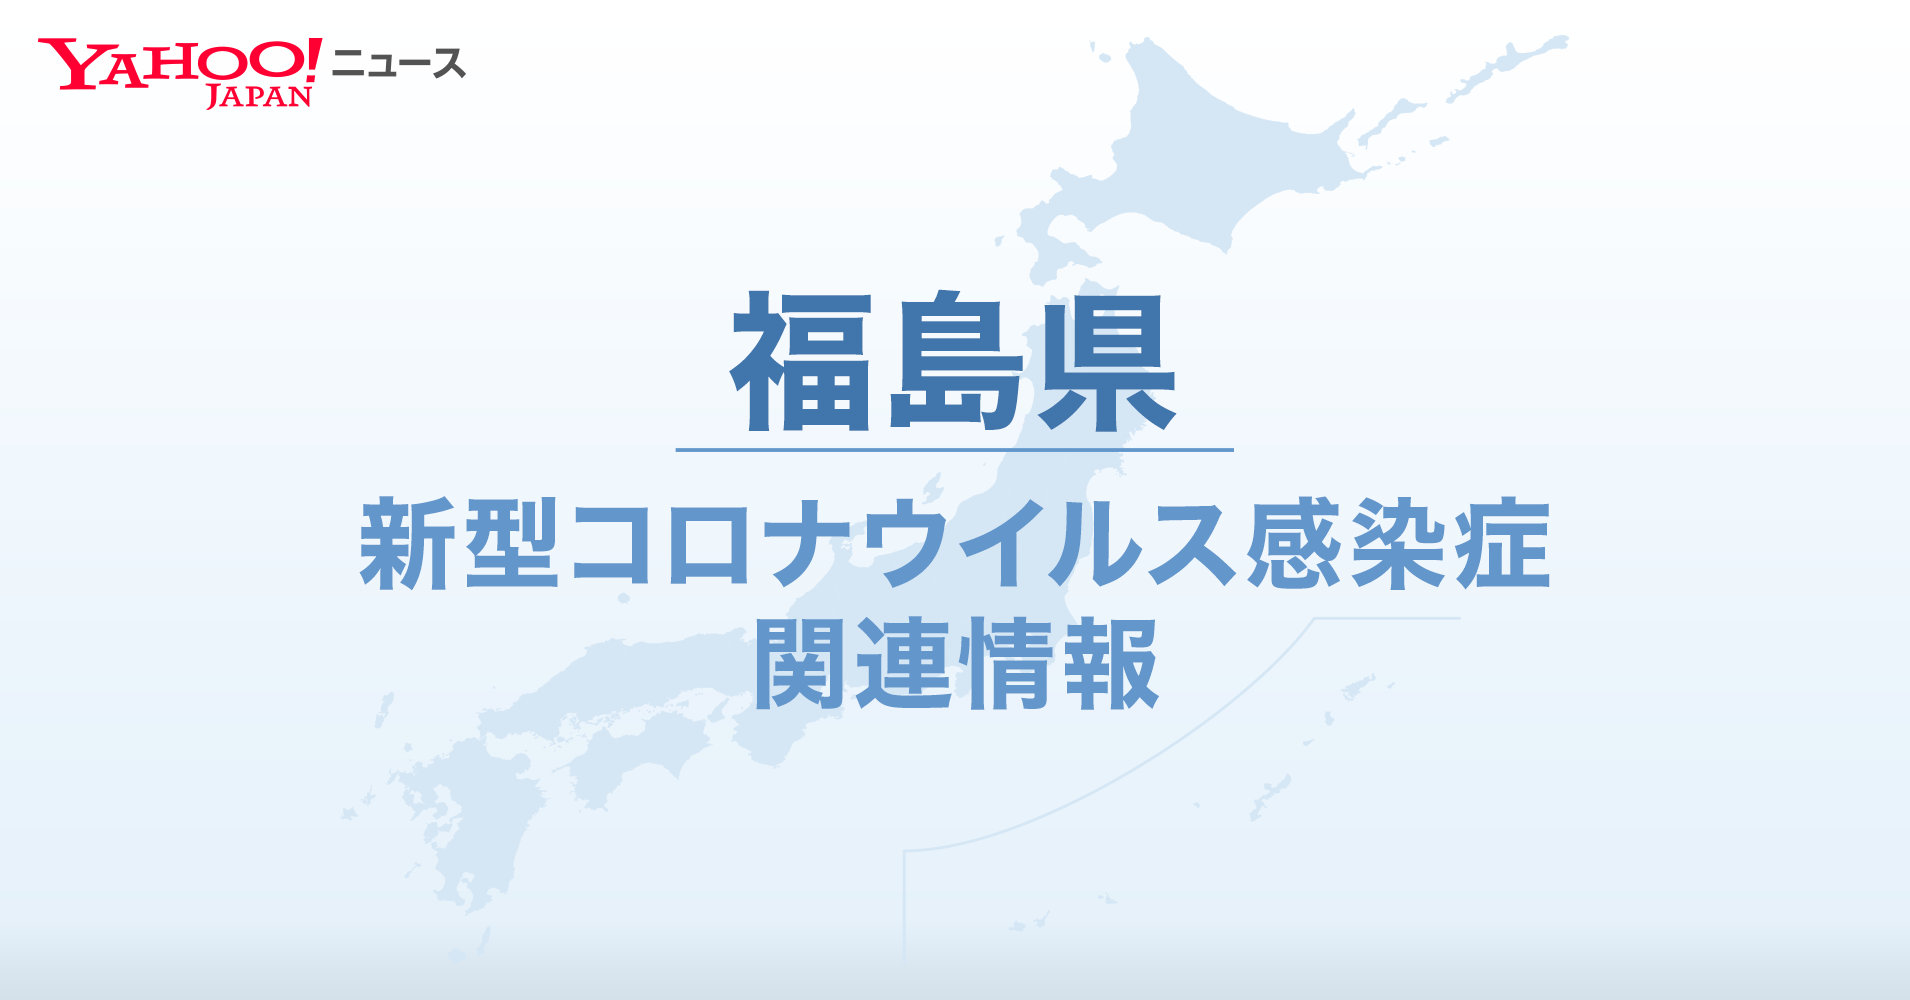 福島県 新型コロナ関連情報 - Yahoo! JAPAN